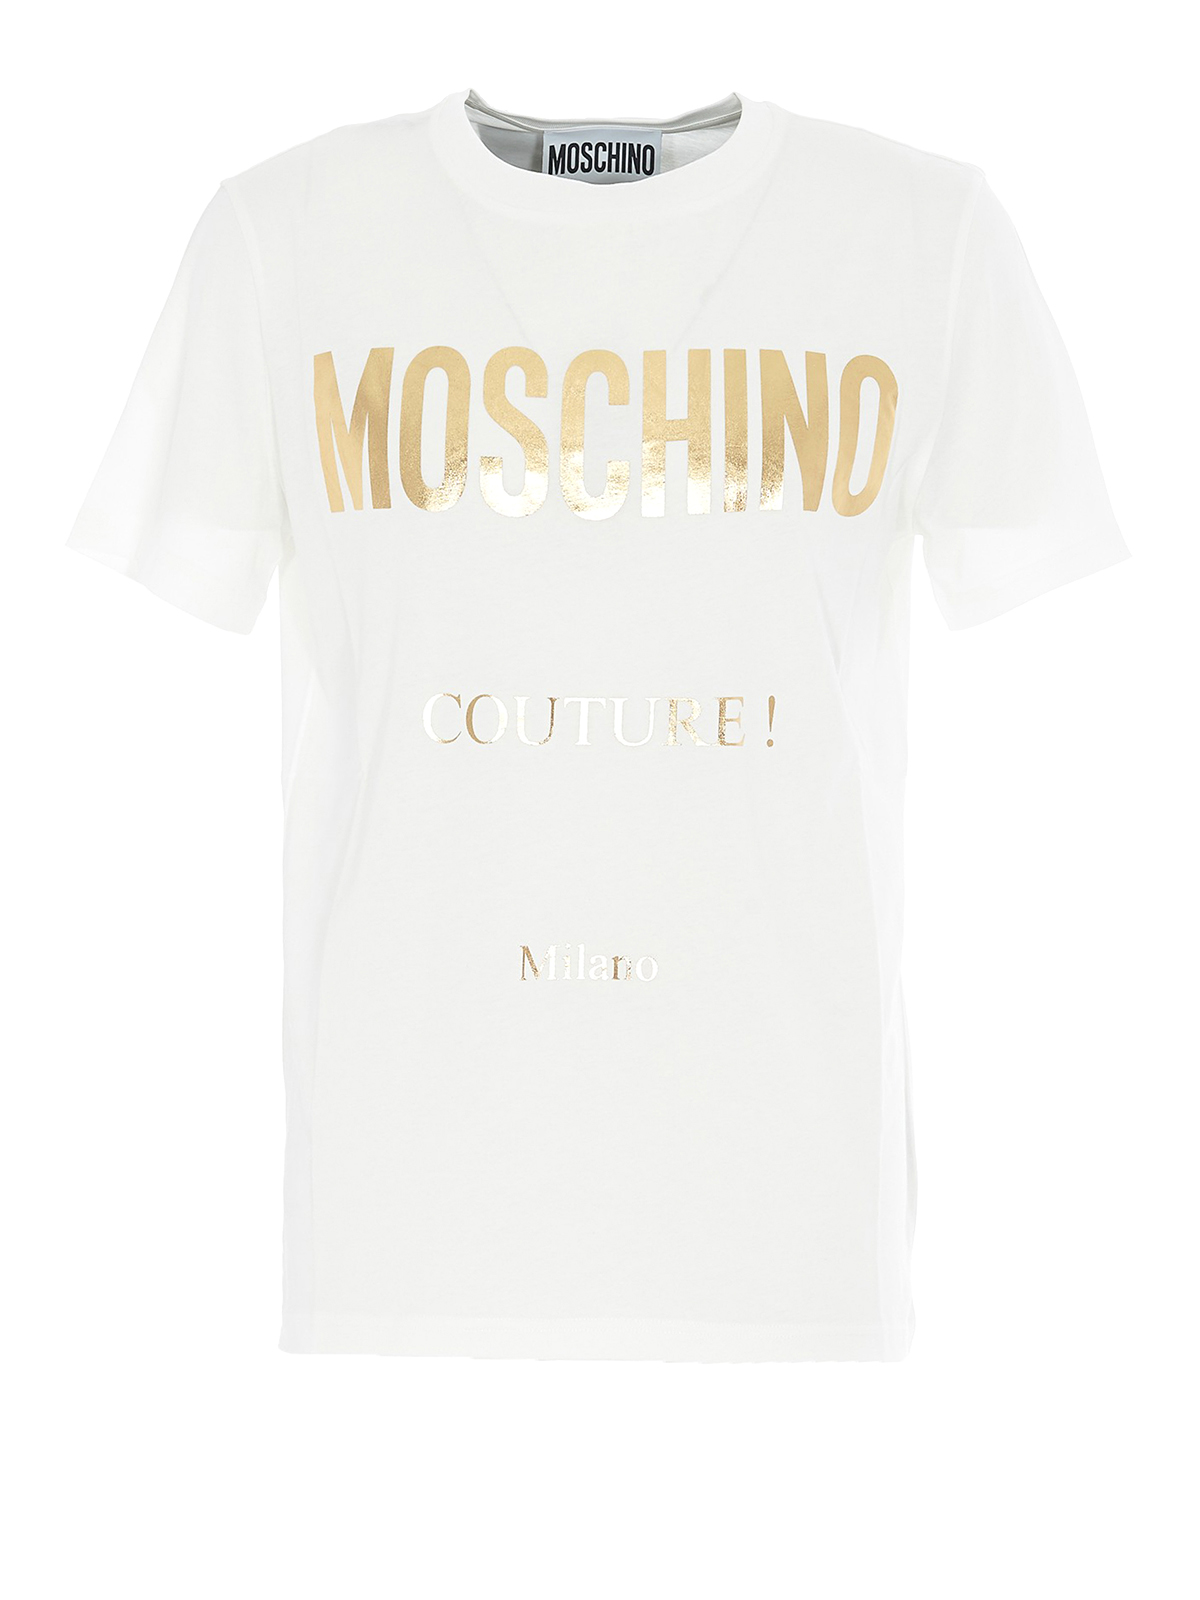 white and gold moschino t shirt